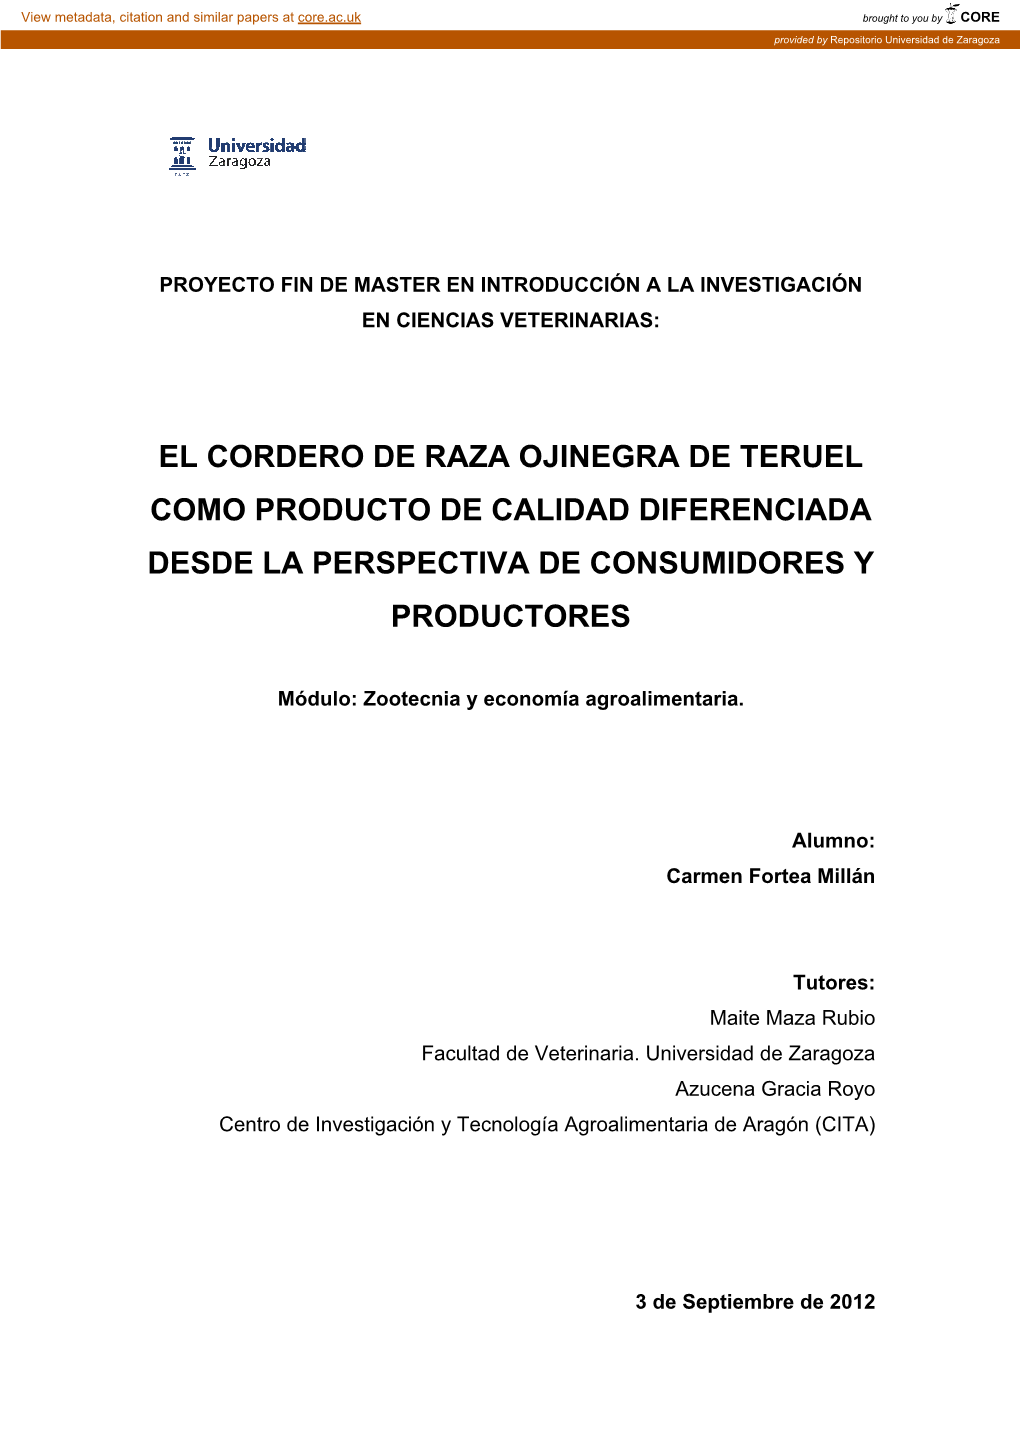 El Cordero De Raza Ojinegra De Teruel Como Producto De Calidad Diferenciada Desde La Perspectiva De Consumidores Y Productores